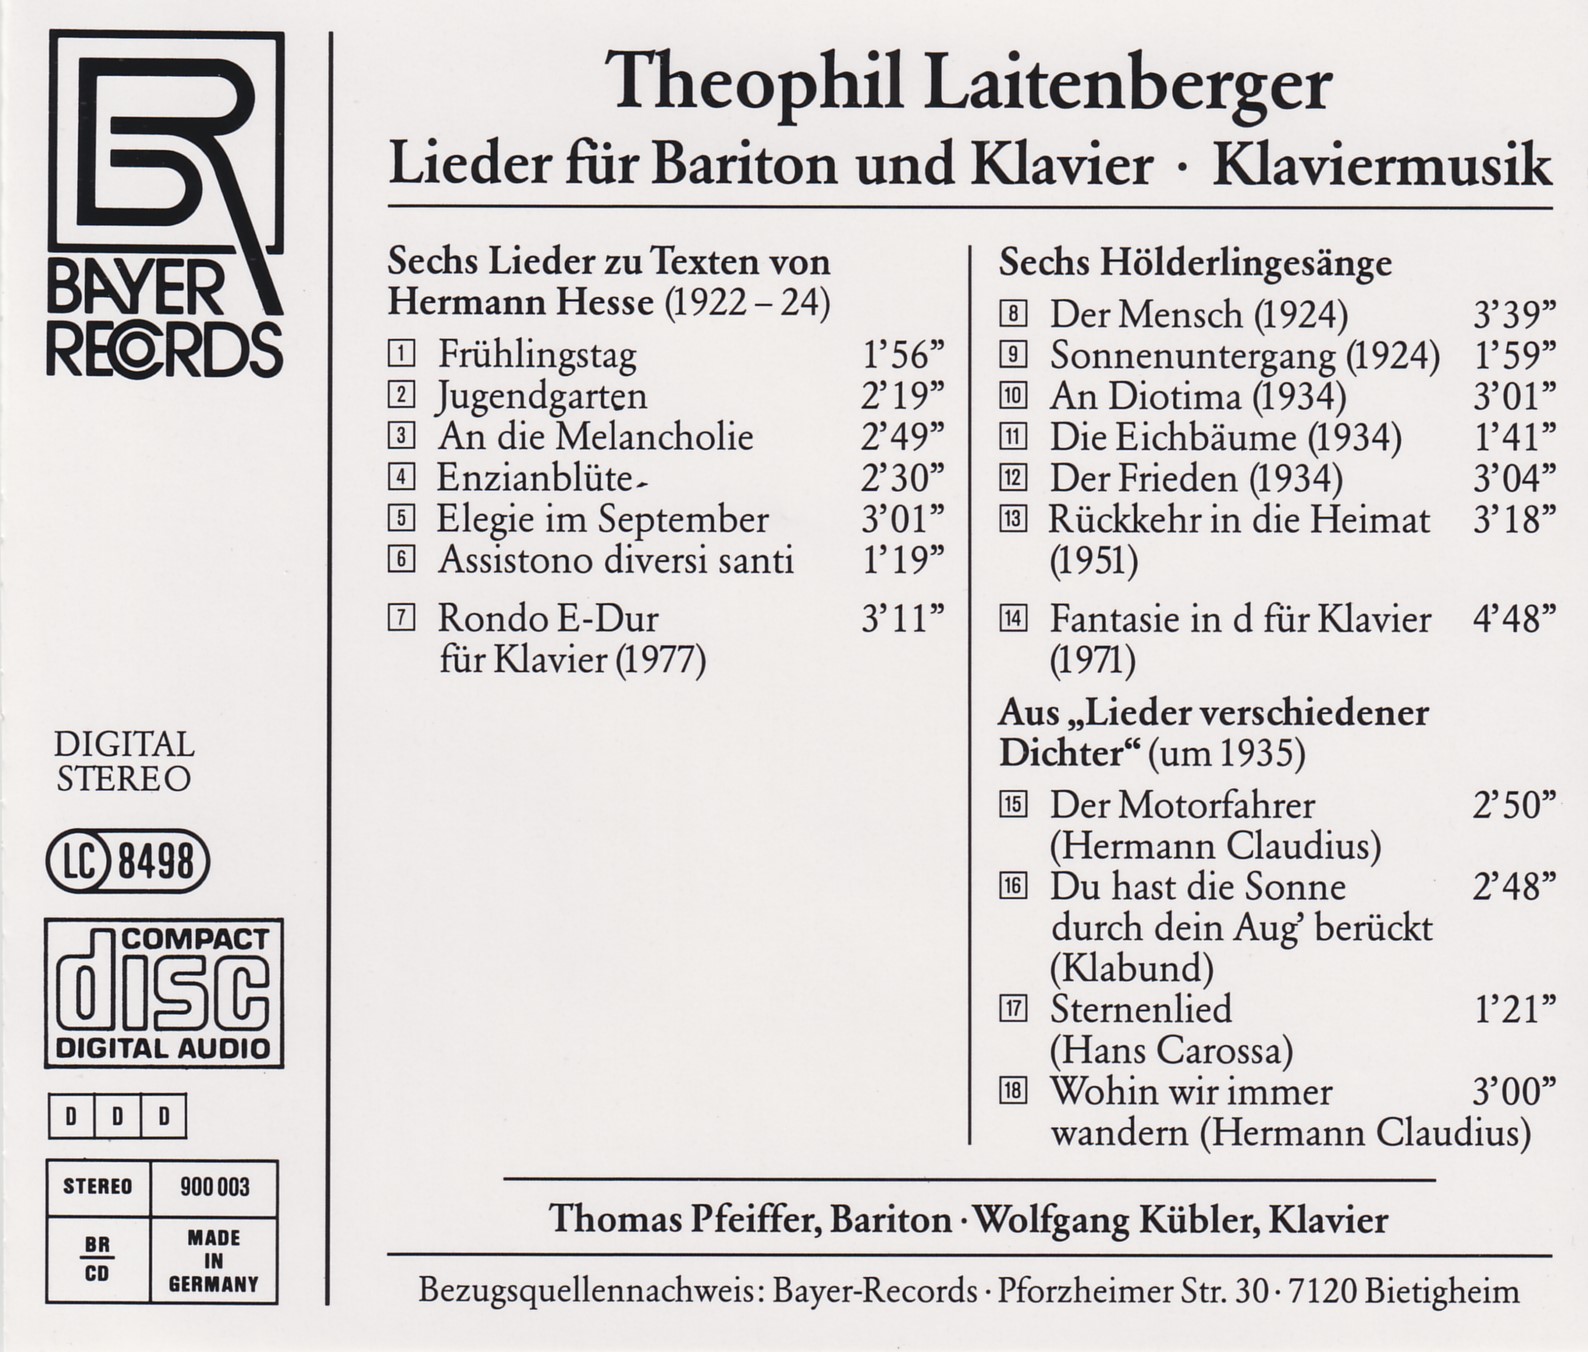 Laitenberger - Lieder und Klaviermusik